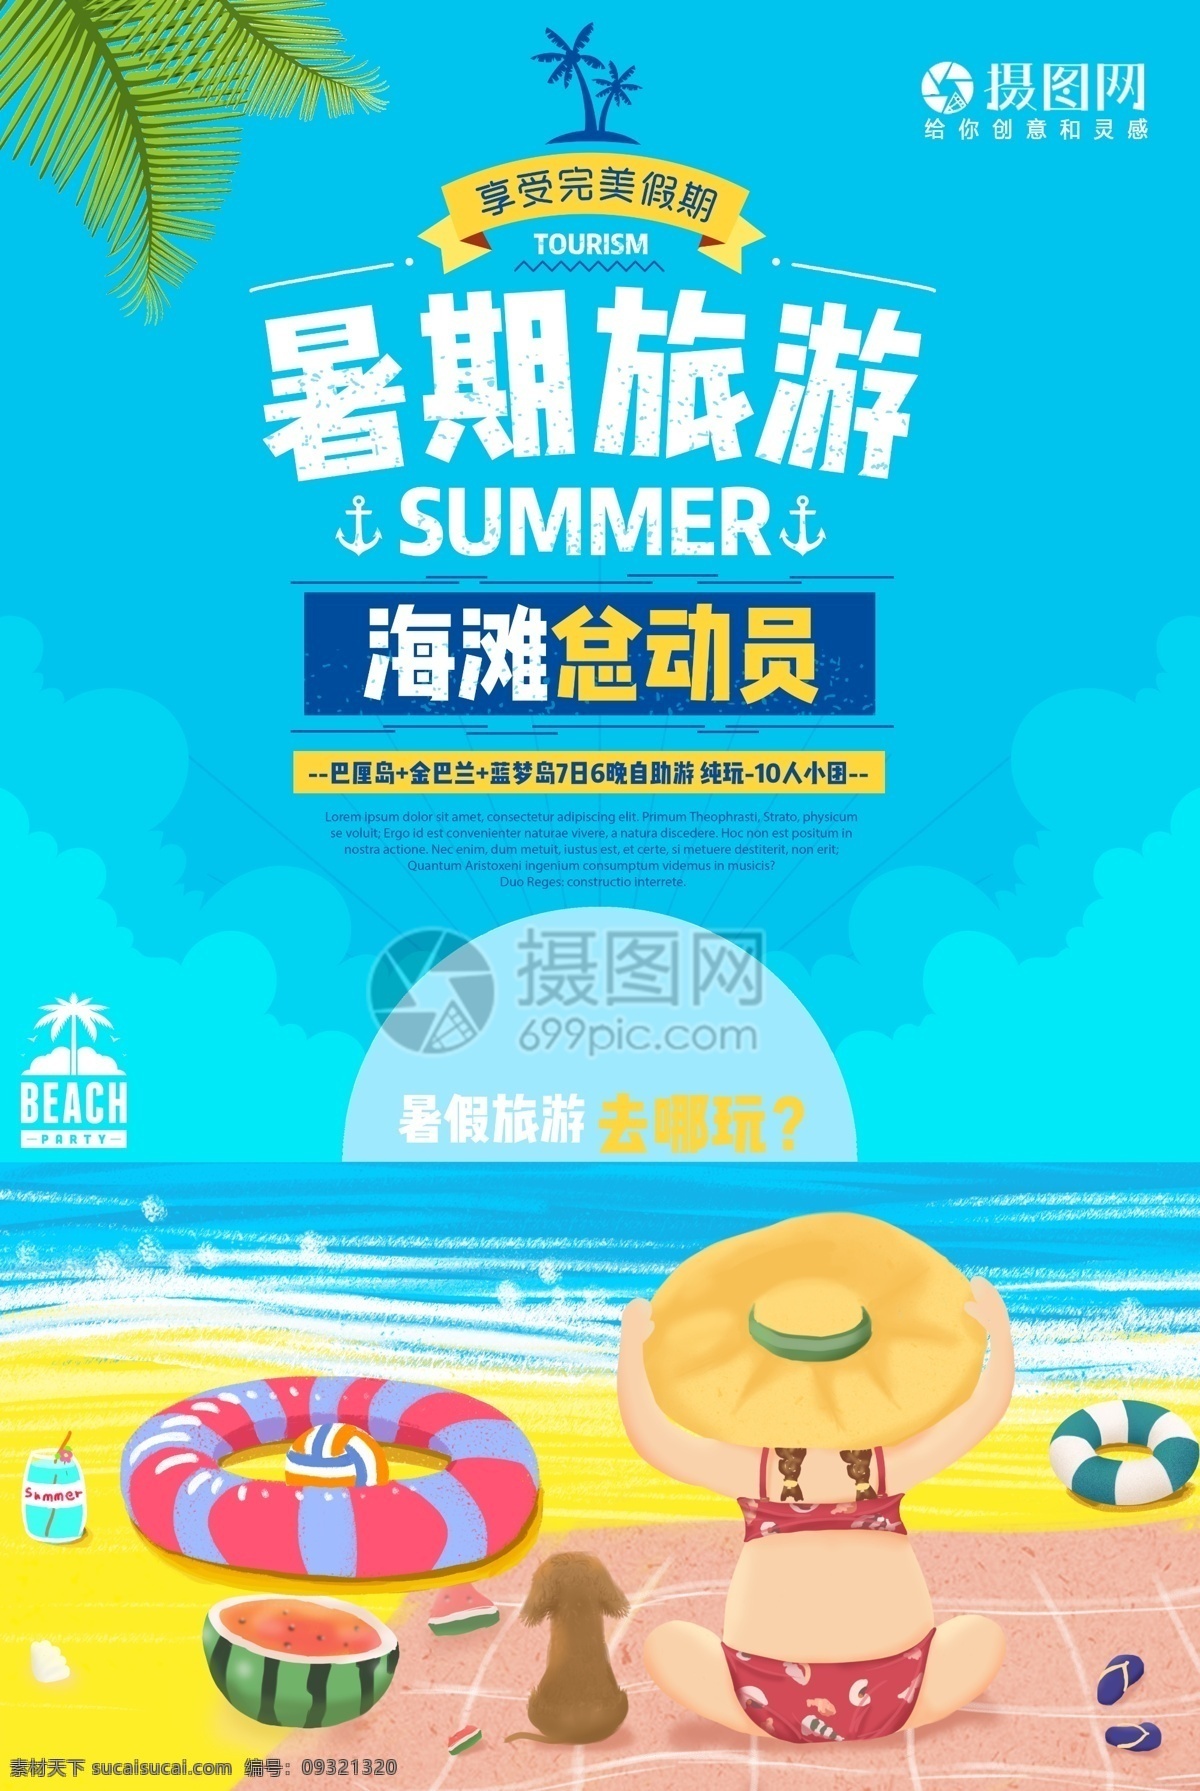 暑期 旅游 暑假 海报 暑期旅游 暑假海报 旅游海报 暑期海报 蓝色大海 沙滩 夏季旅游